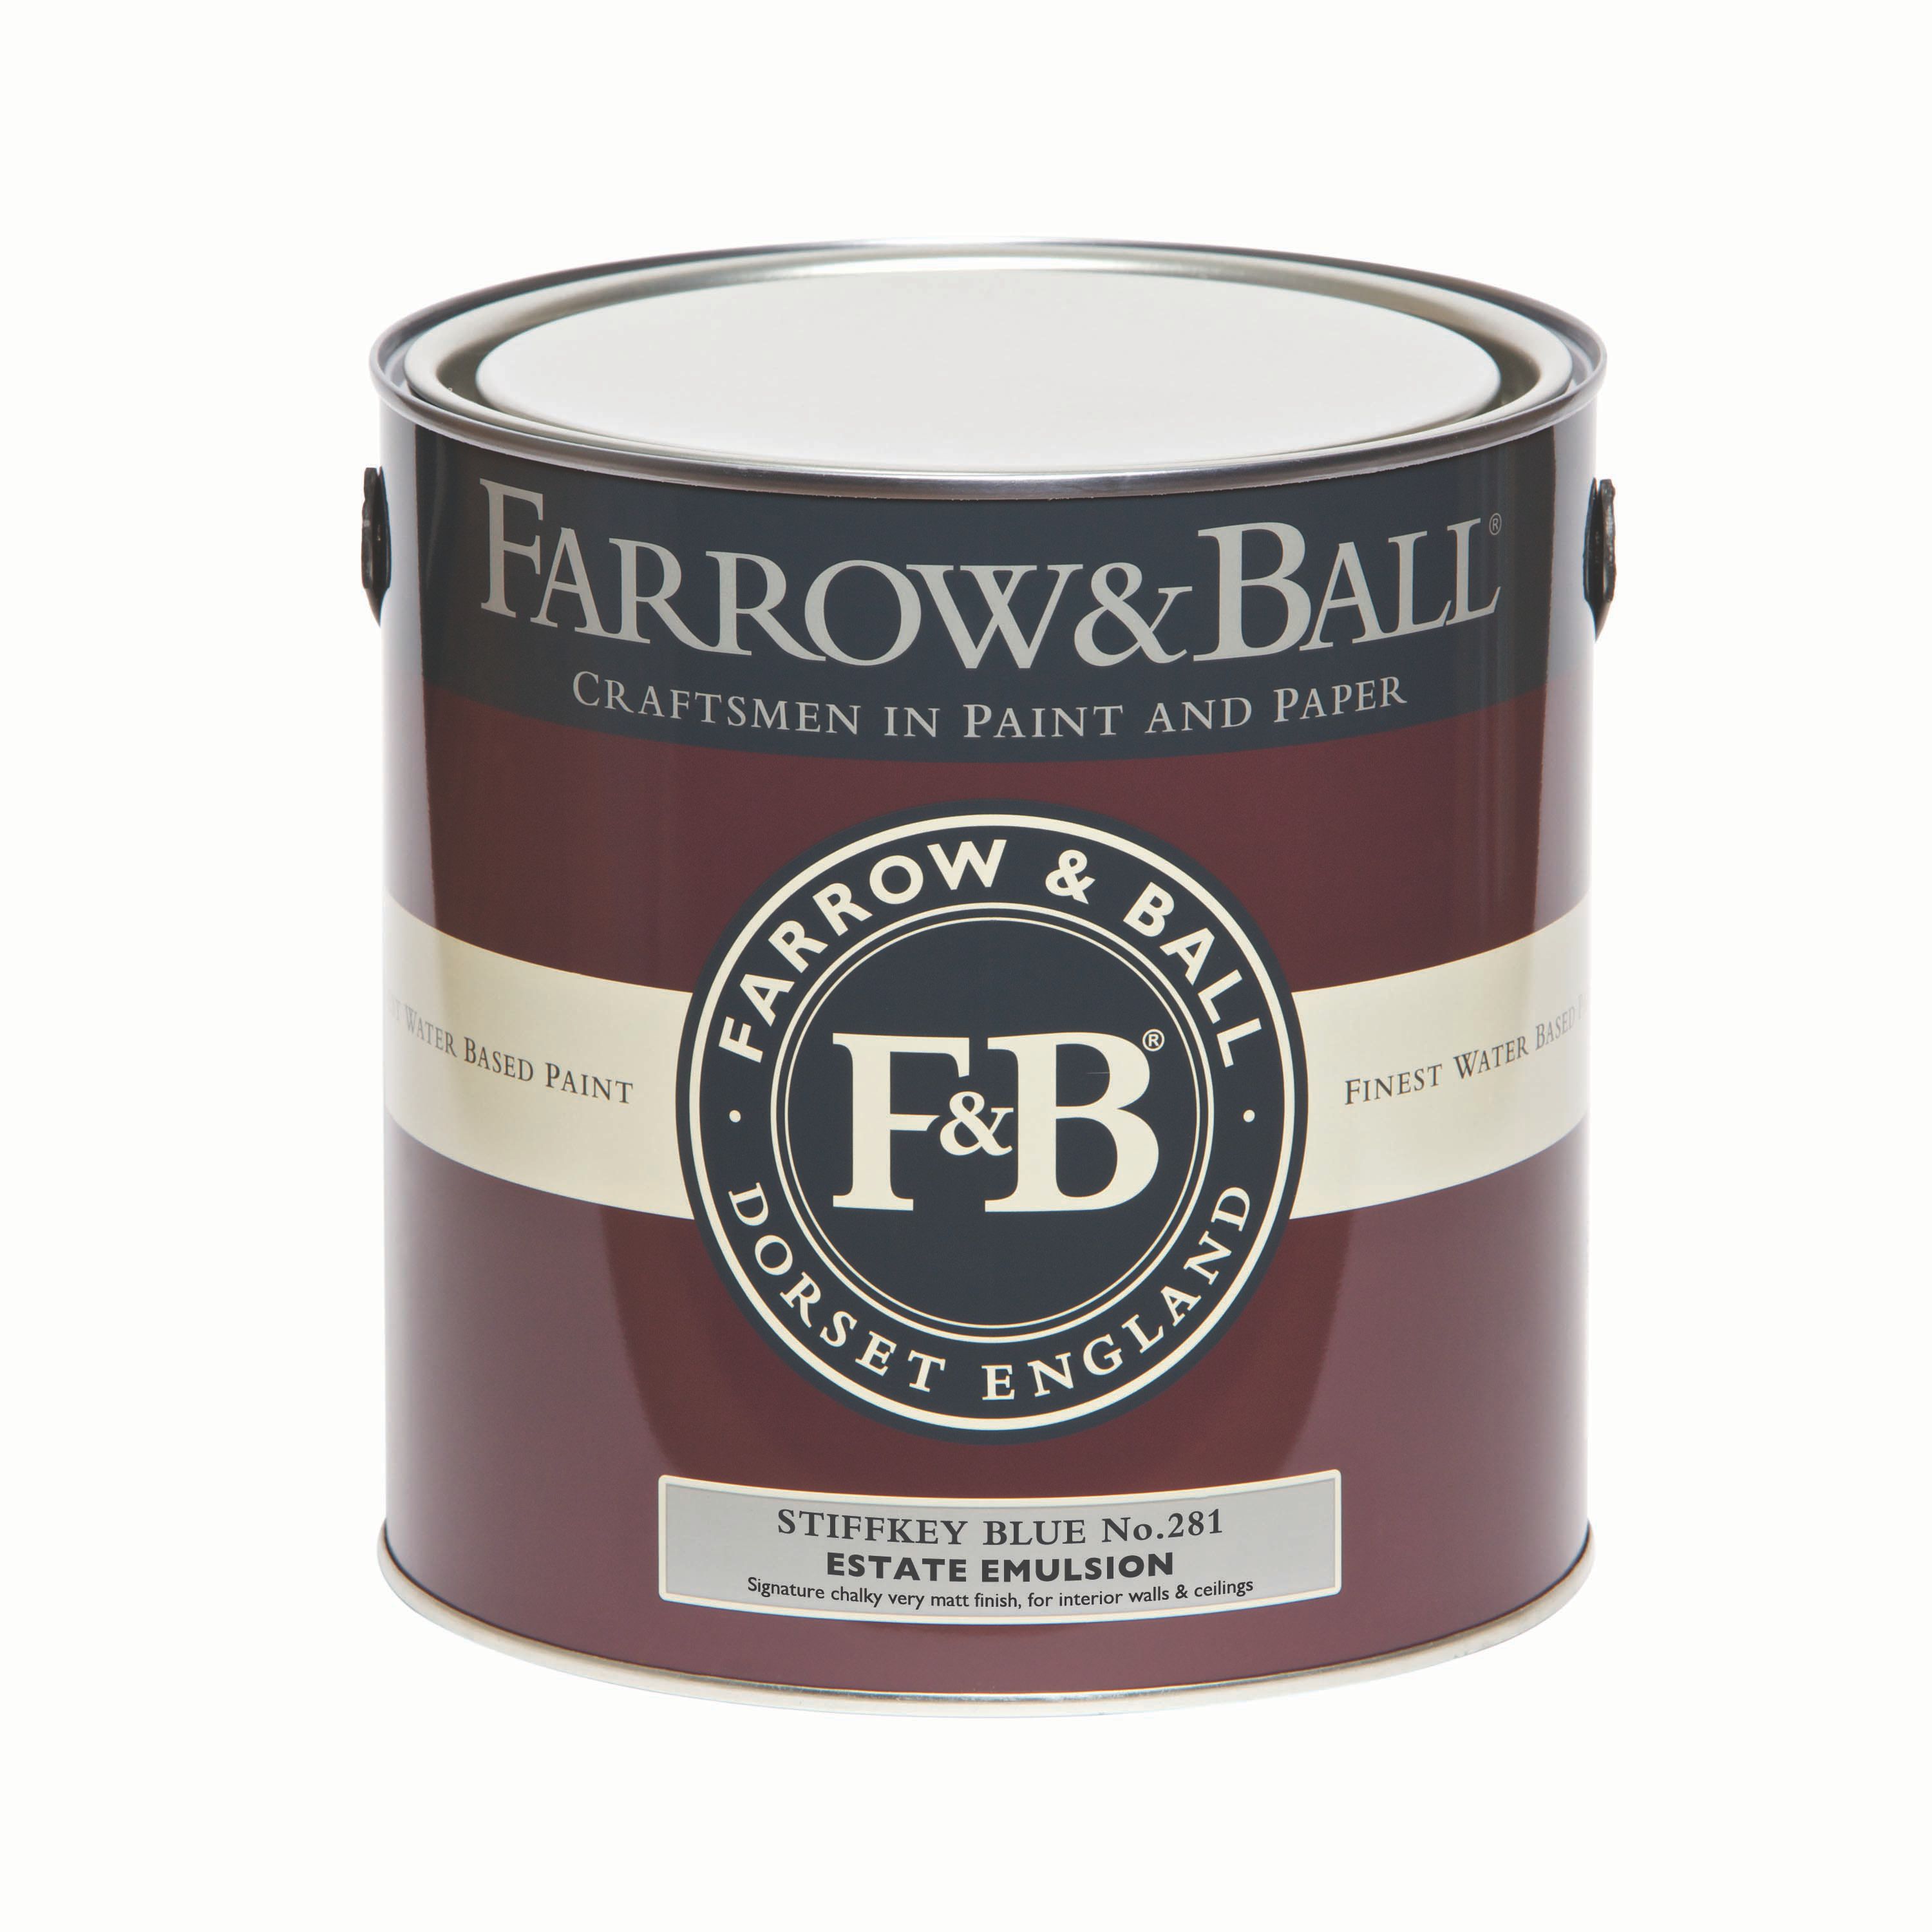 Farrow & Ball Estate Stiffkey blue Matt Emulsion paint, 2.5L